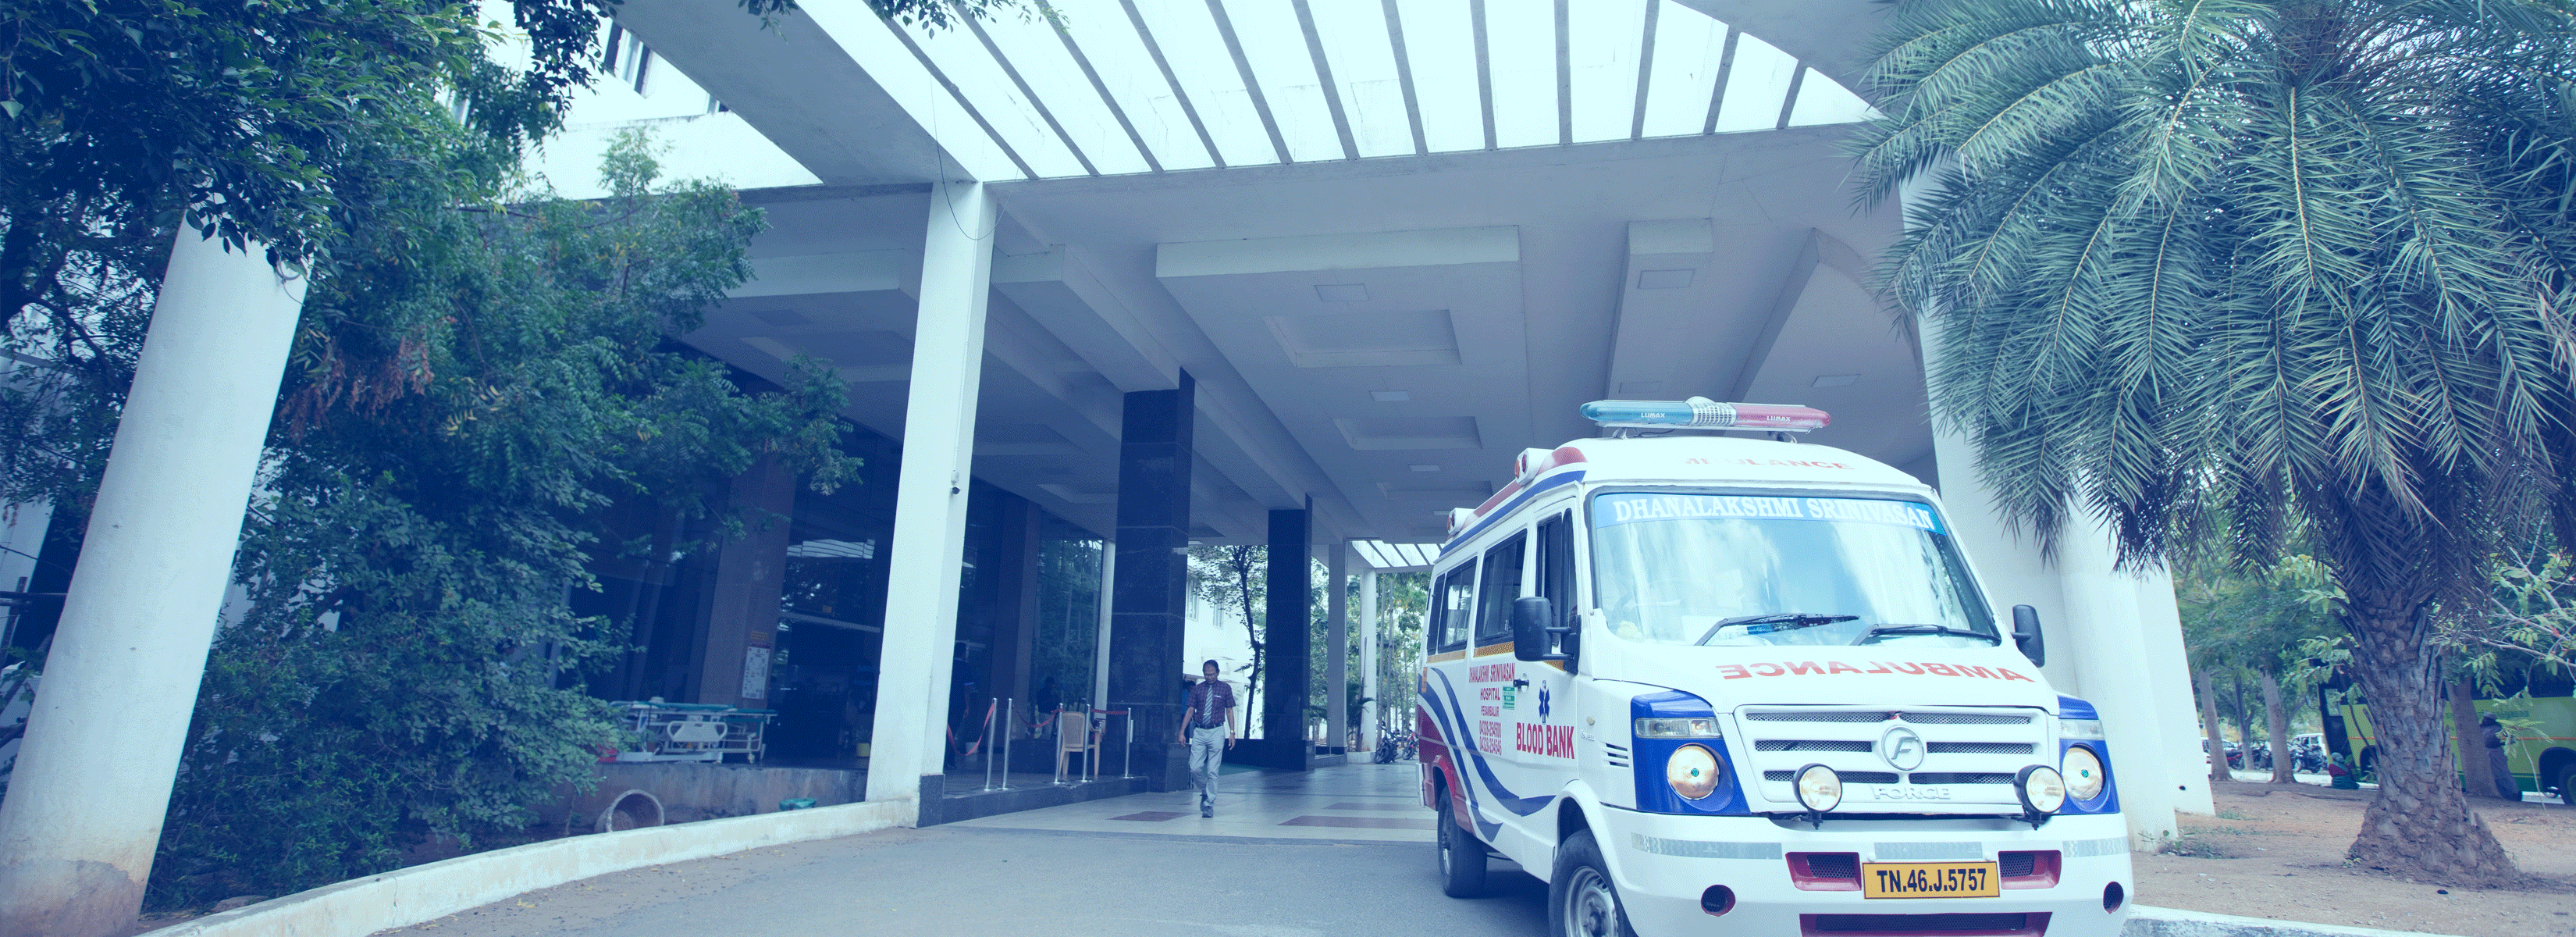 Dhanalakshmi_Srinivasan_Hospital_Building_with_ambulance